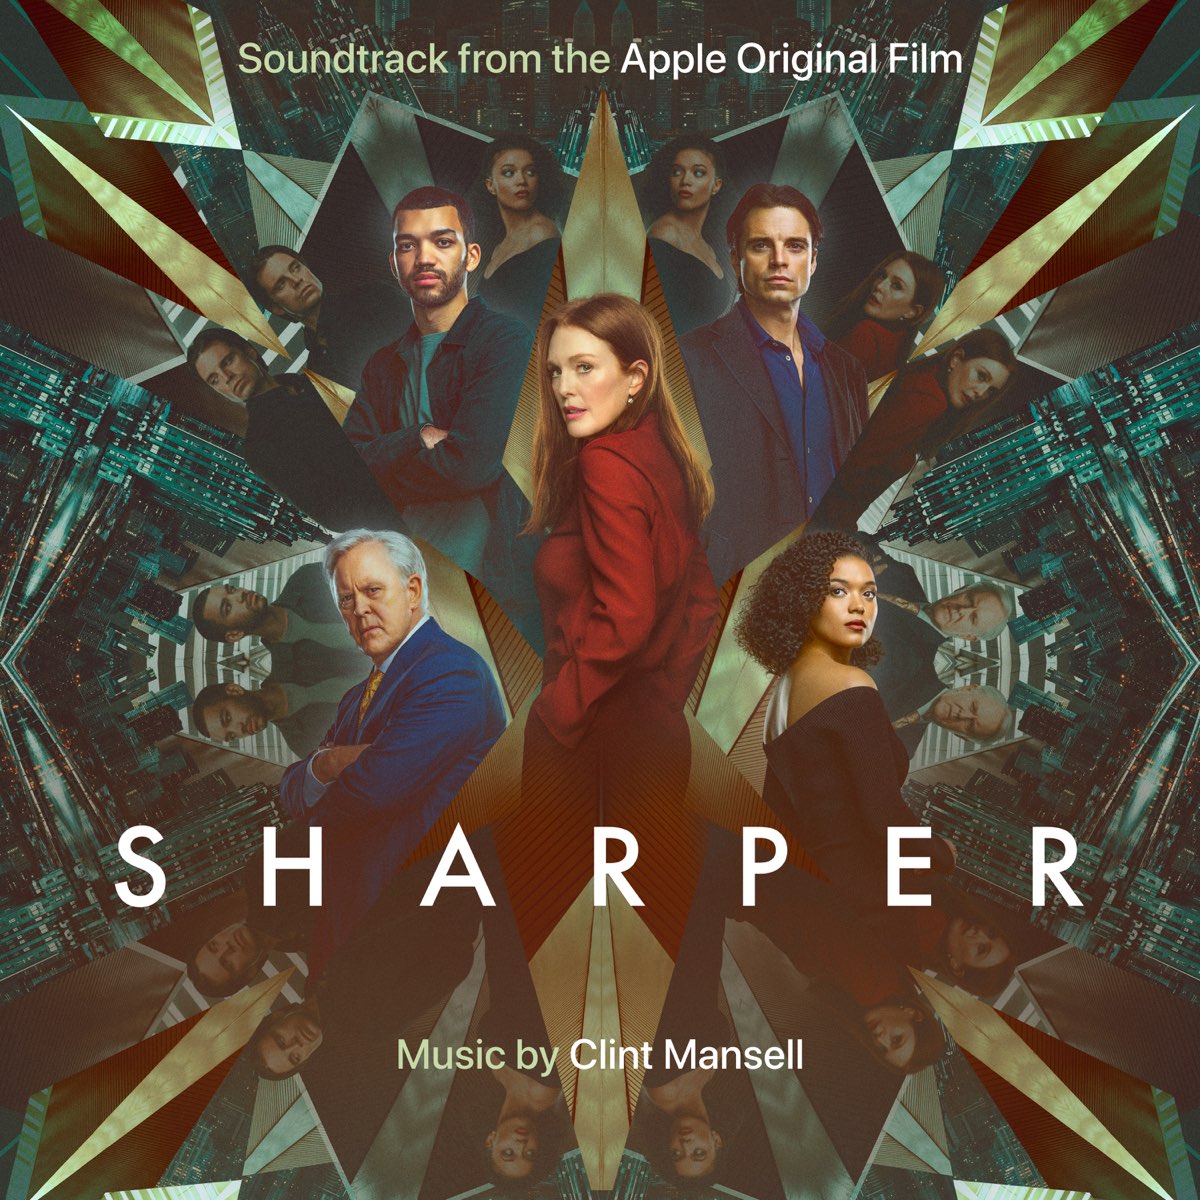 Sharper-musica-Canzoni-Colonna-Sonora-Film.jpg